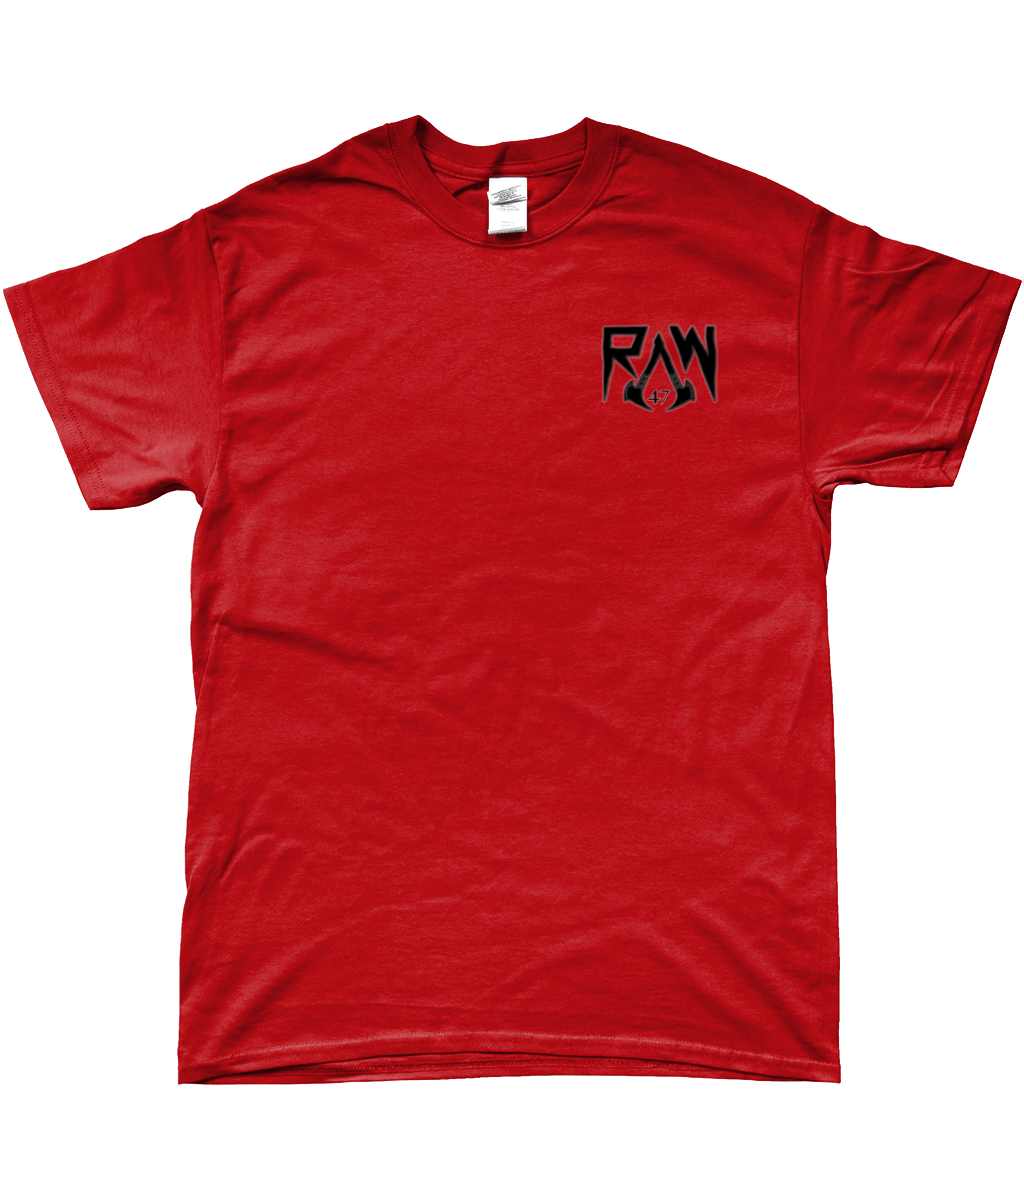 RAW47 Soft-Style Unisex T-Shirt